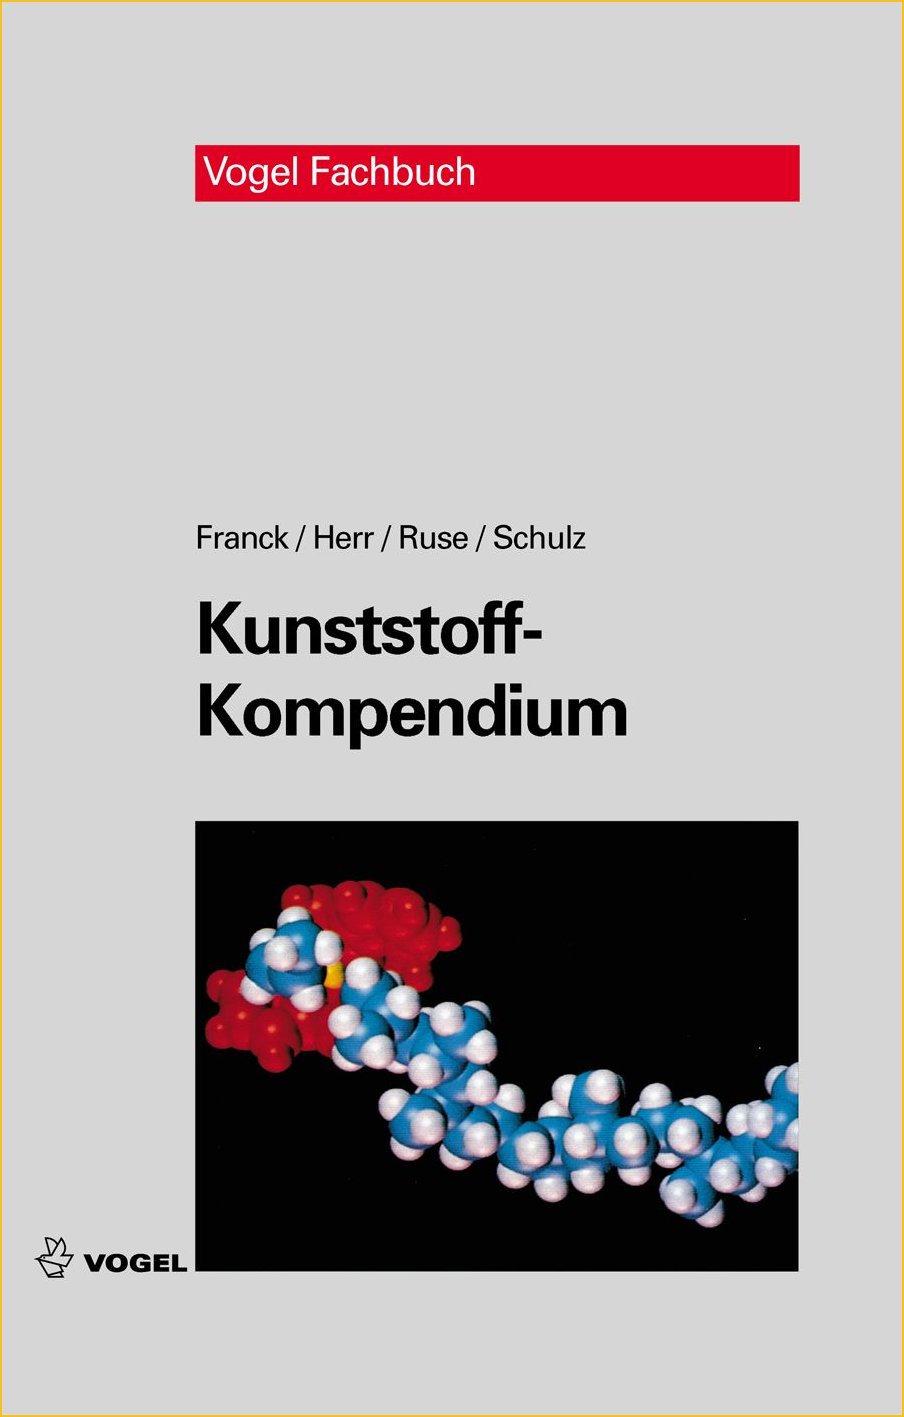 Das Fachbuch "Kunststoff-Kompendium" von Franck/Herr/Ruse/Schulz